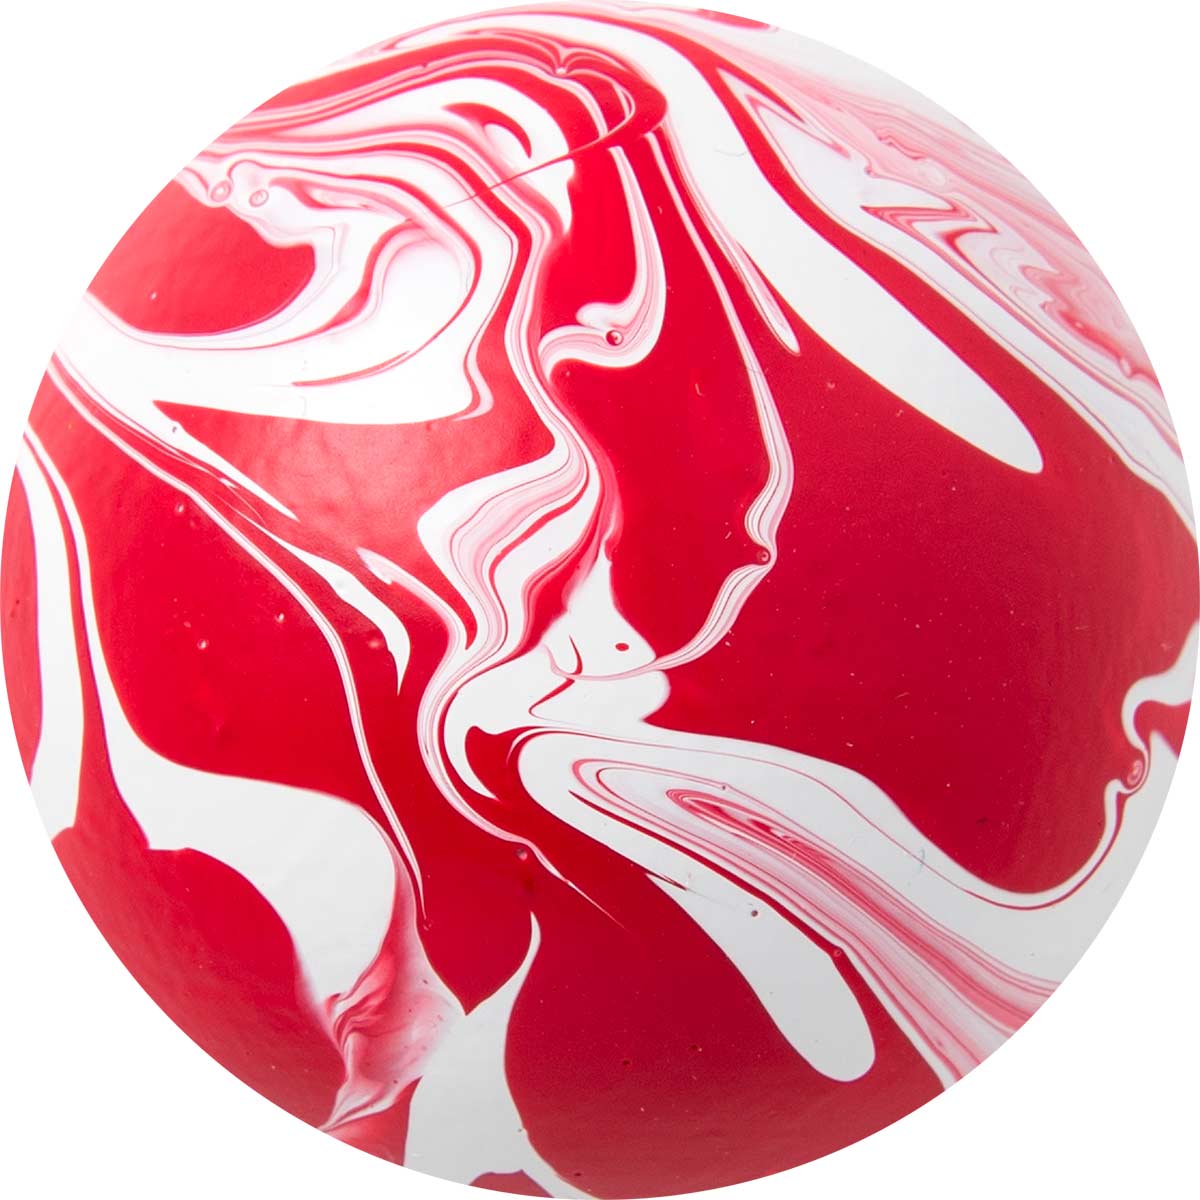 FolkArt ® Marbling Paint - Red, 2 oz. - 16922